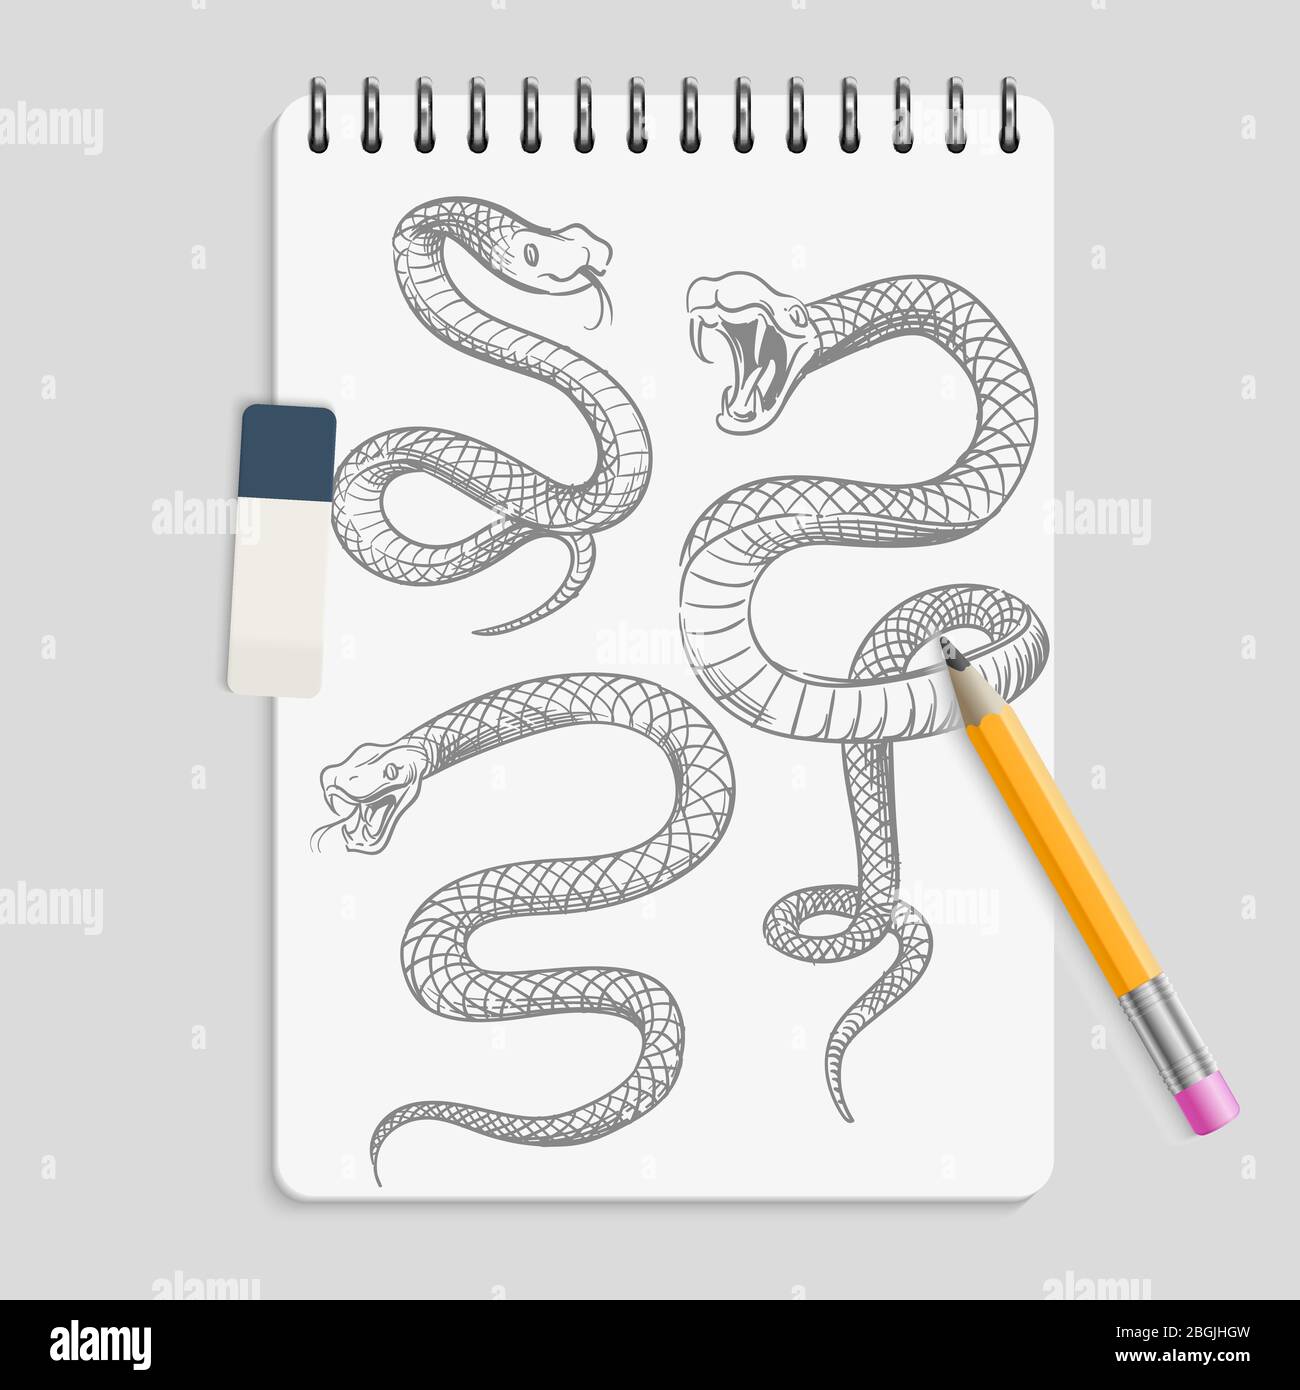 Serpenti disegnati a mano su realizic notebook page con matita e gomma. Disegno del tatuaggio serpente animale, viper da disegno rettile, illustrazione vettoriale Illustrazione Vettoriale